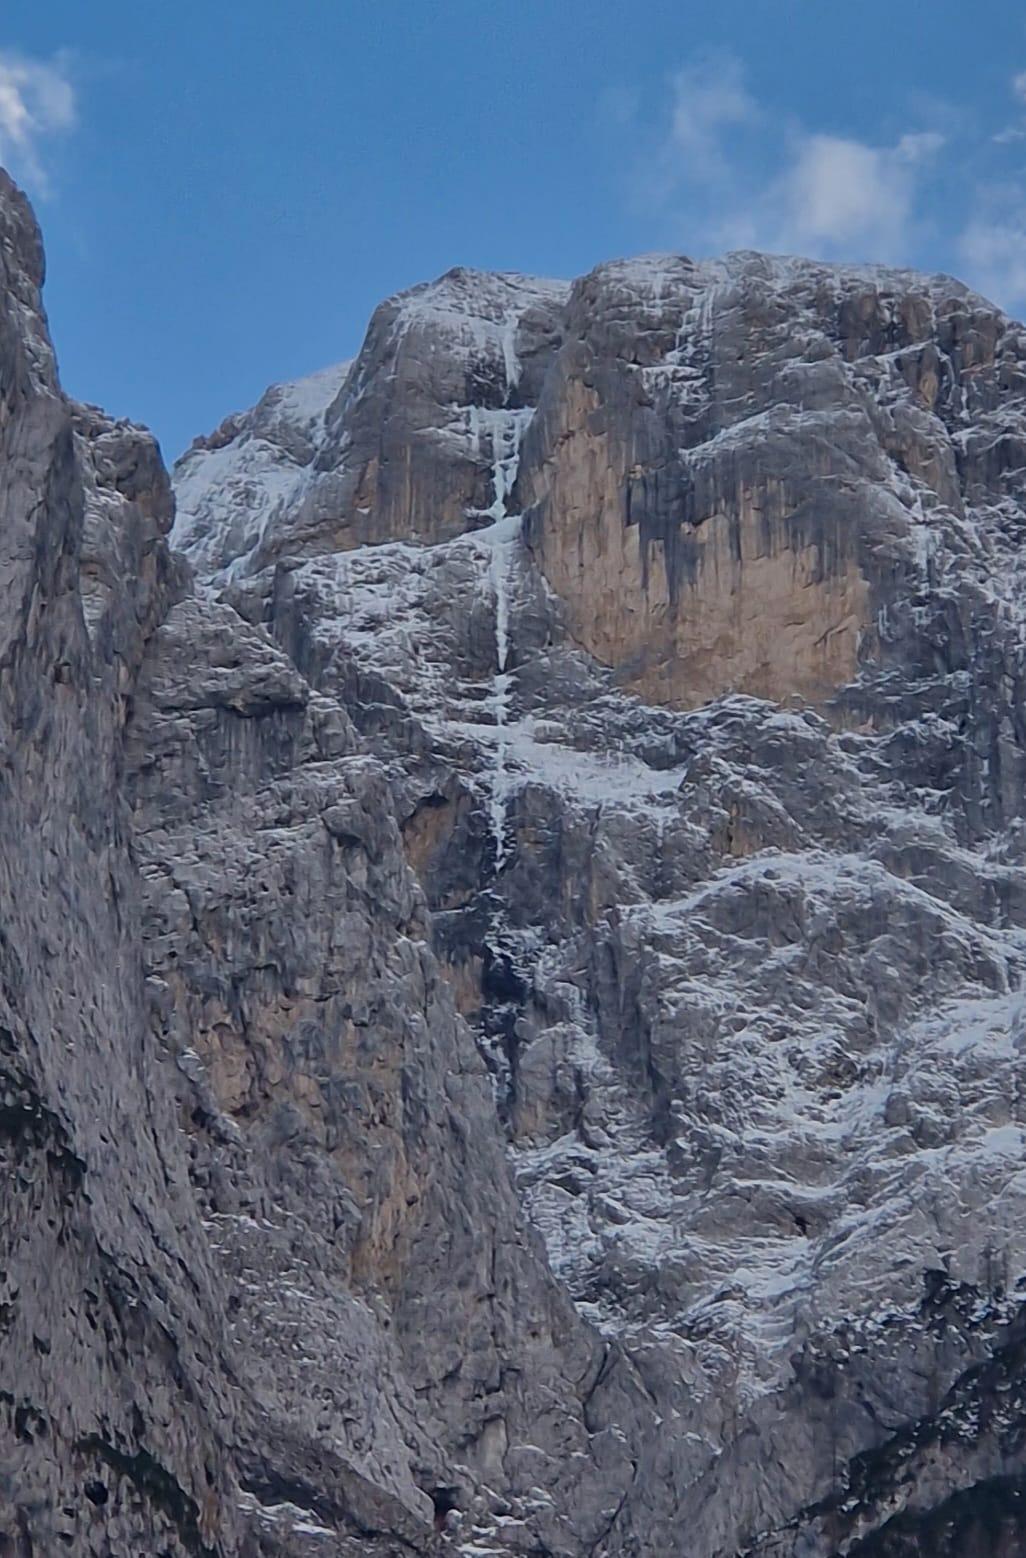 Ultima Perla ajoutée à Agner dans les Dolomites par Nicola Bertoldo, Diego Dellai